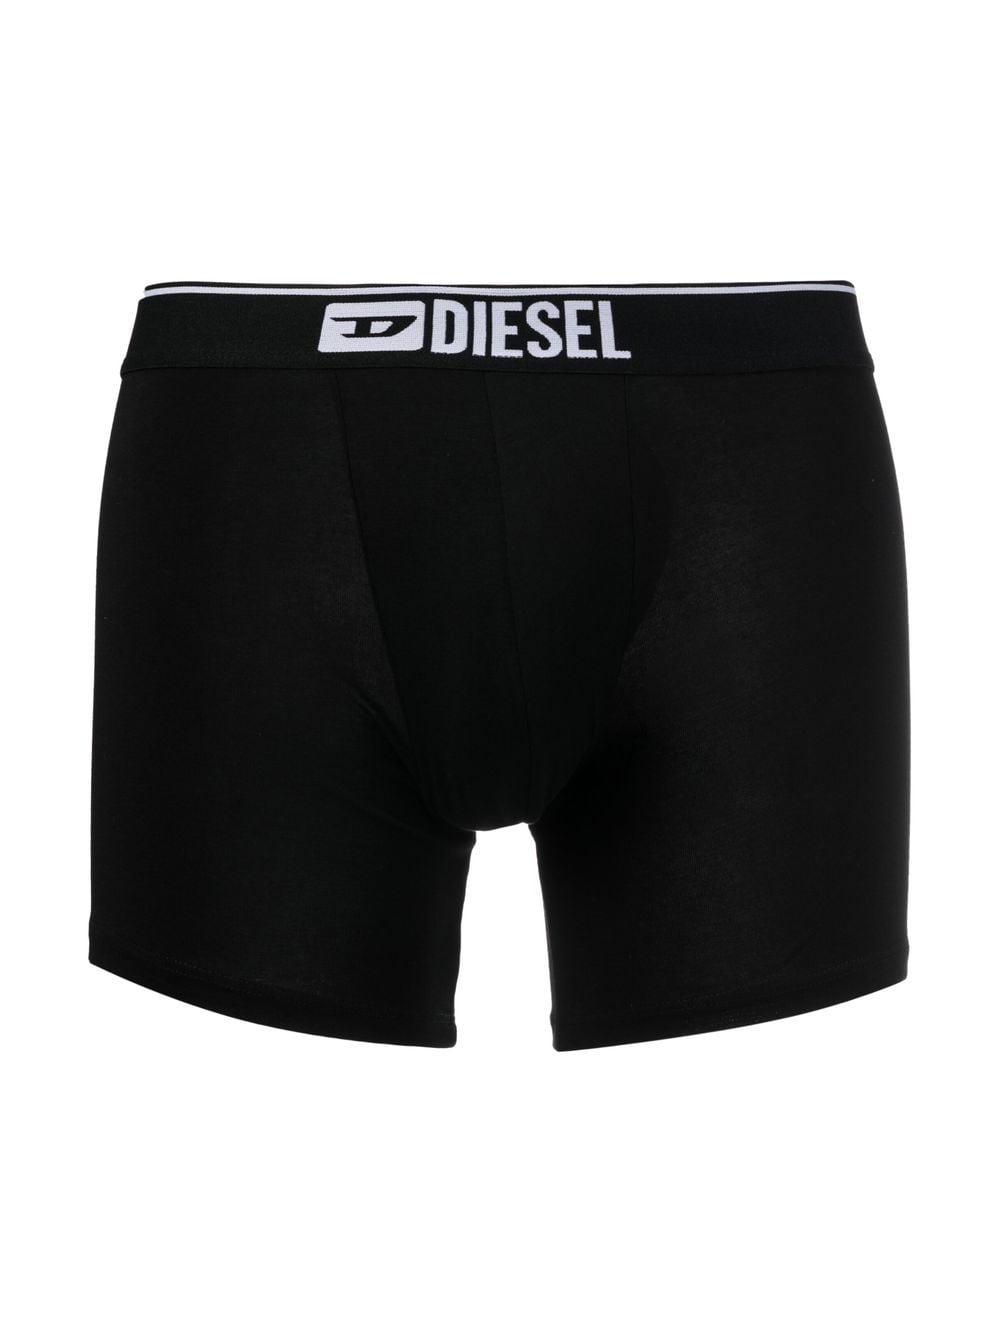 Image 2 of Diesel Umbx-Sebastian boxer briefs (pack of three)